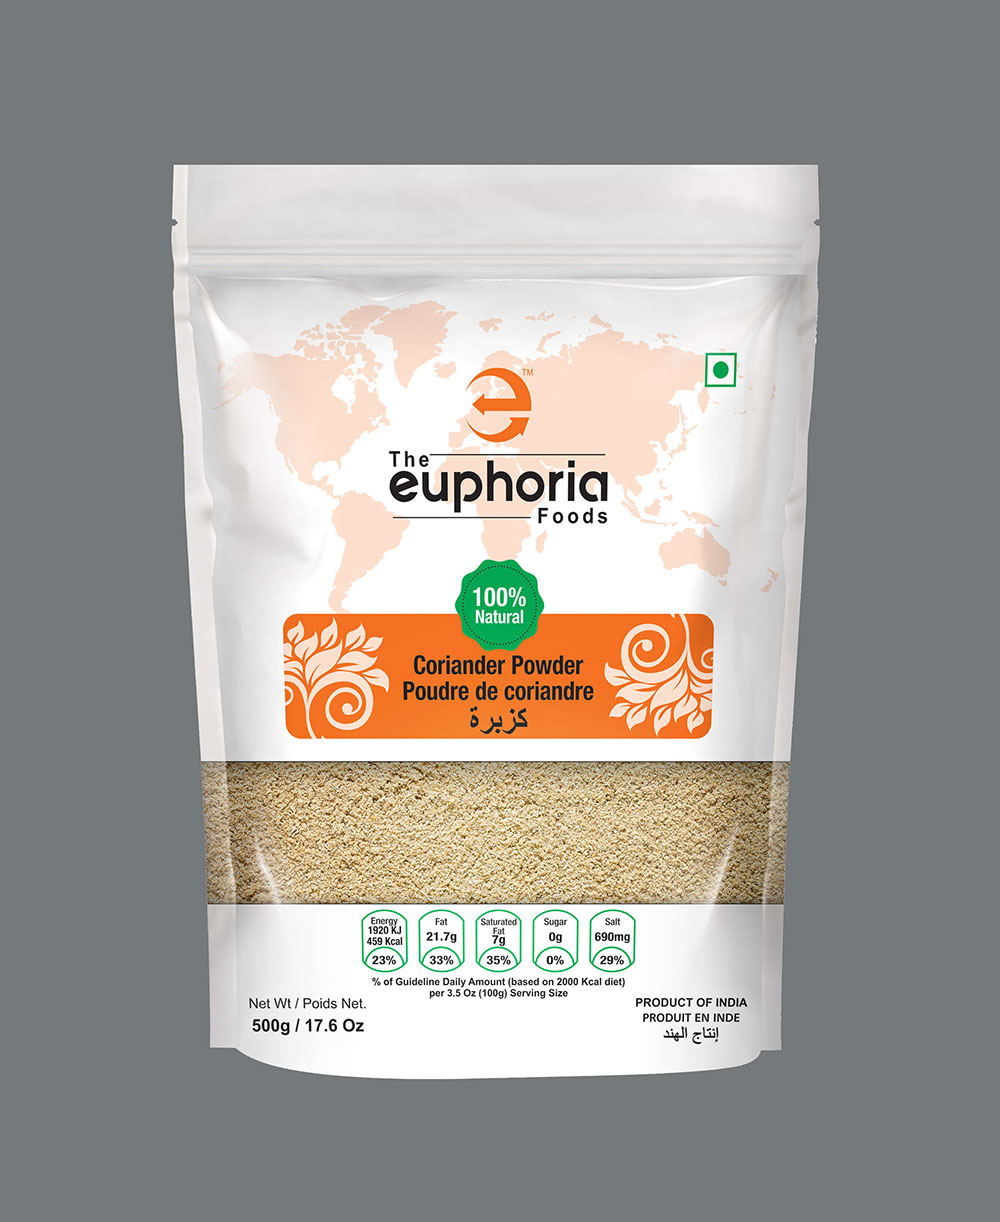 CORIANDER POWDER at Euphoria Impex, Indian Spices Exporter